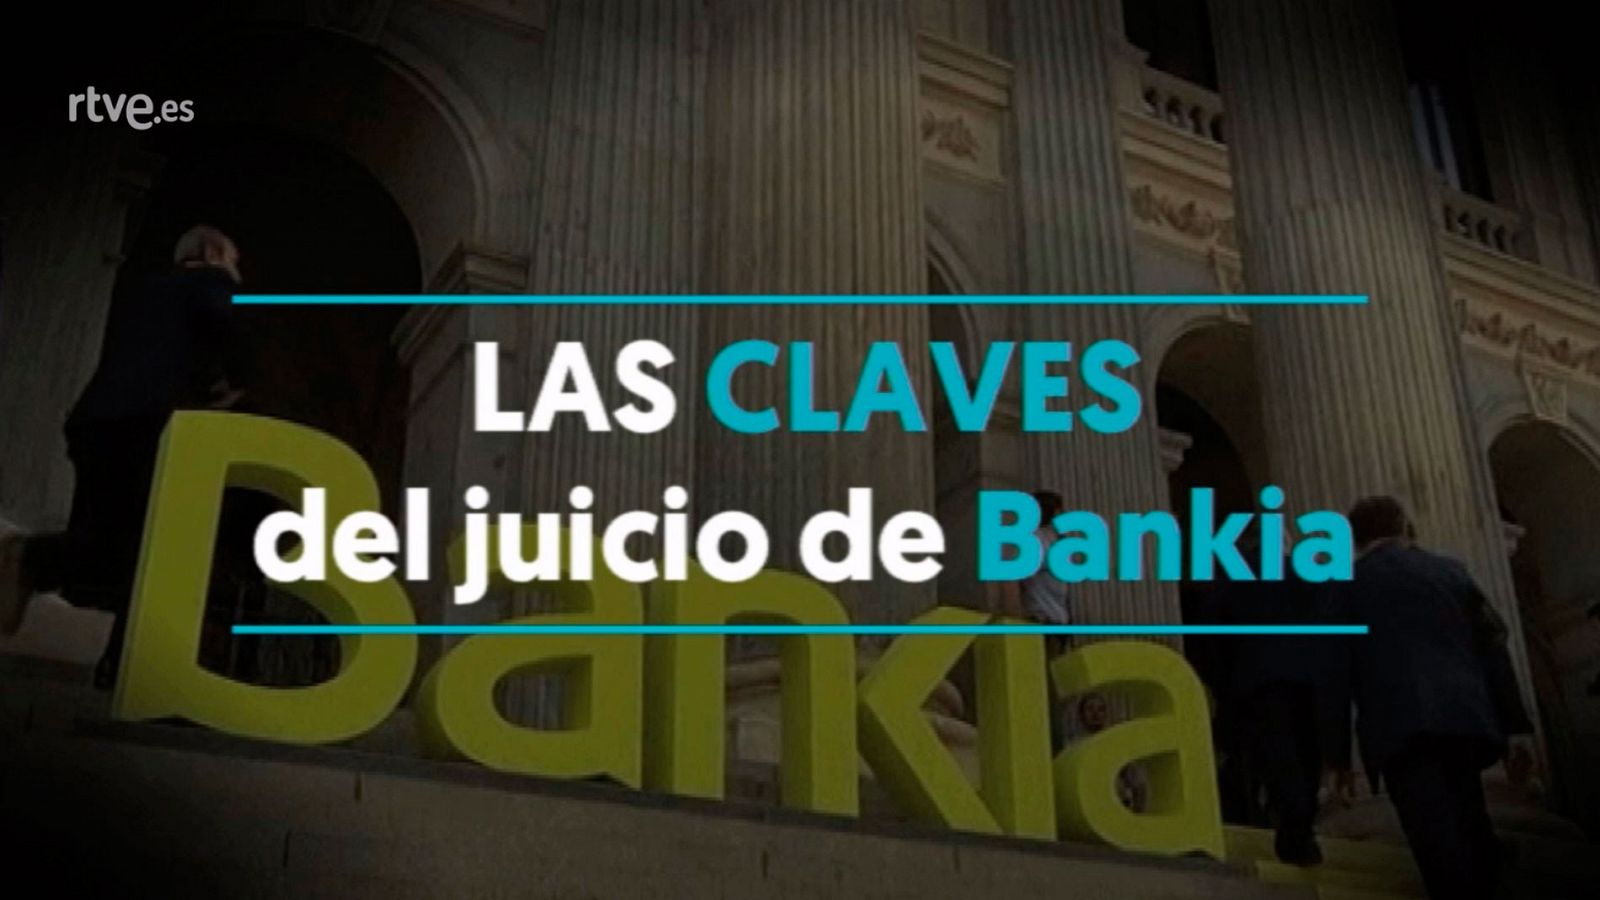 Las claves del juicio de Bankia